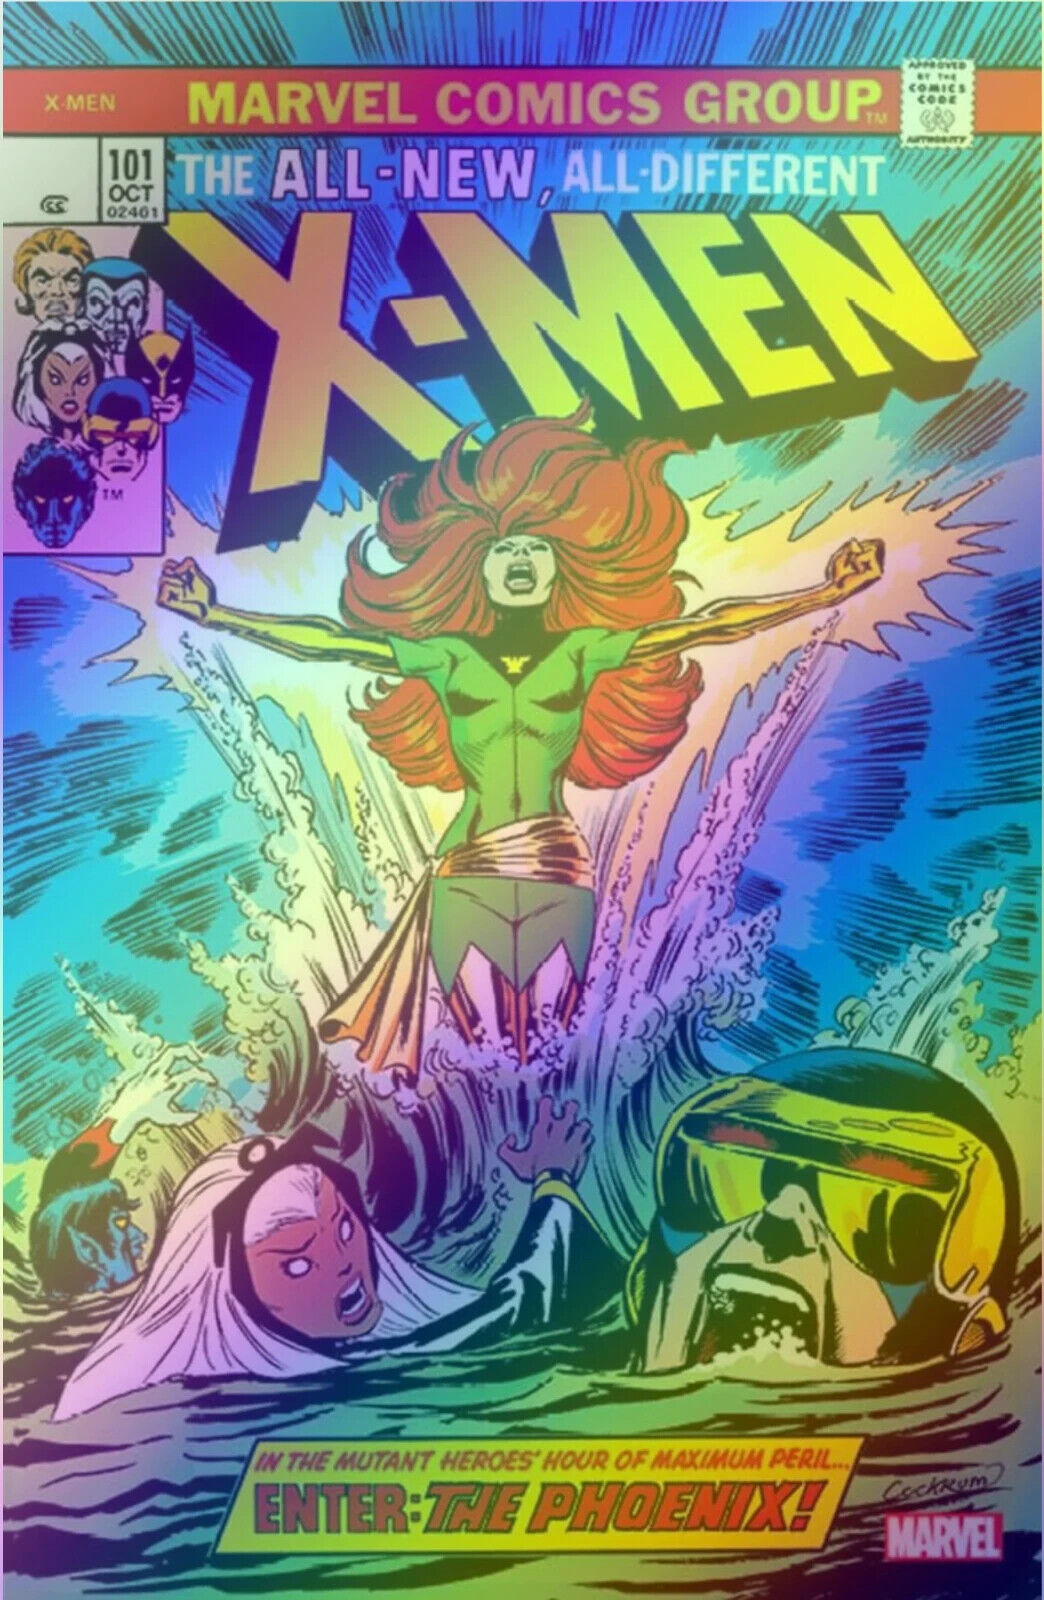 X-MEN #101 (FACSIMILE EDITION EXCLUSIVE FOIL VARIANT) COMIC ~ Marvel Comics ~ NM